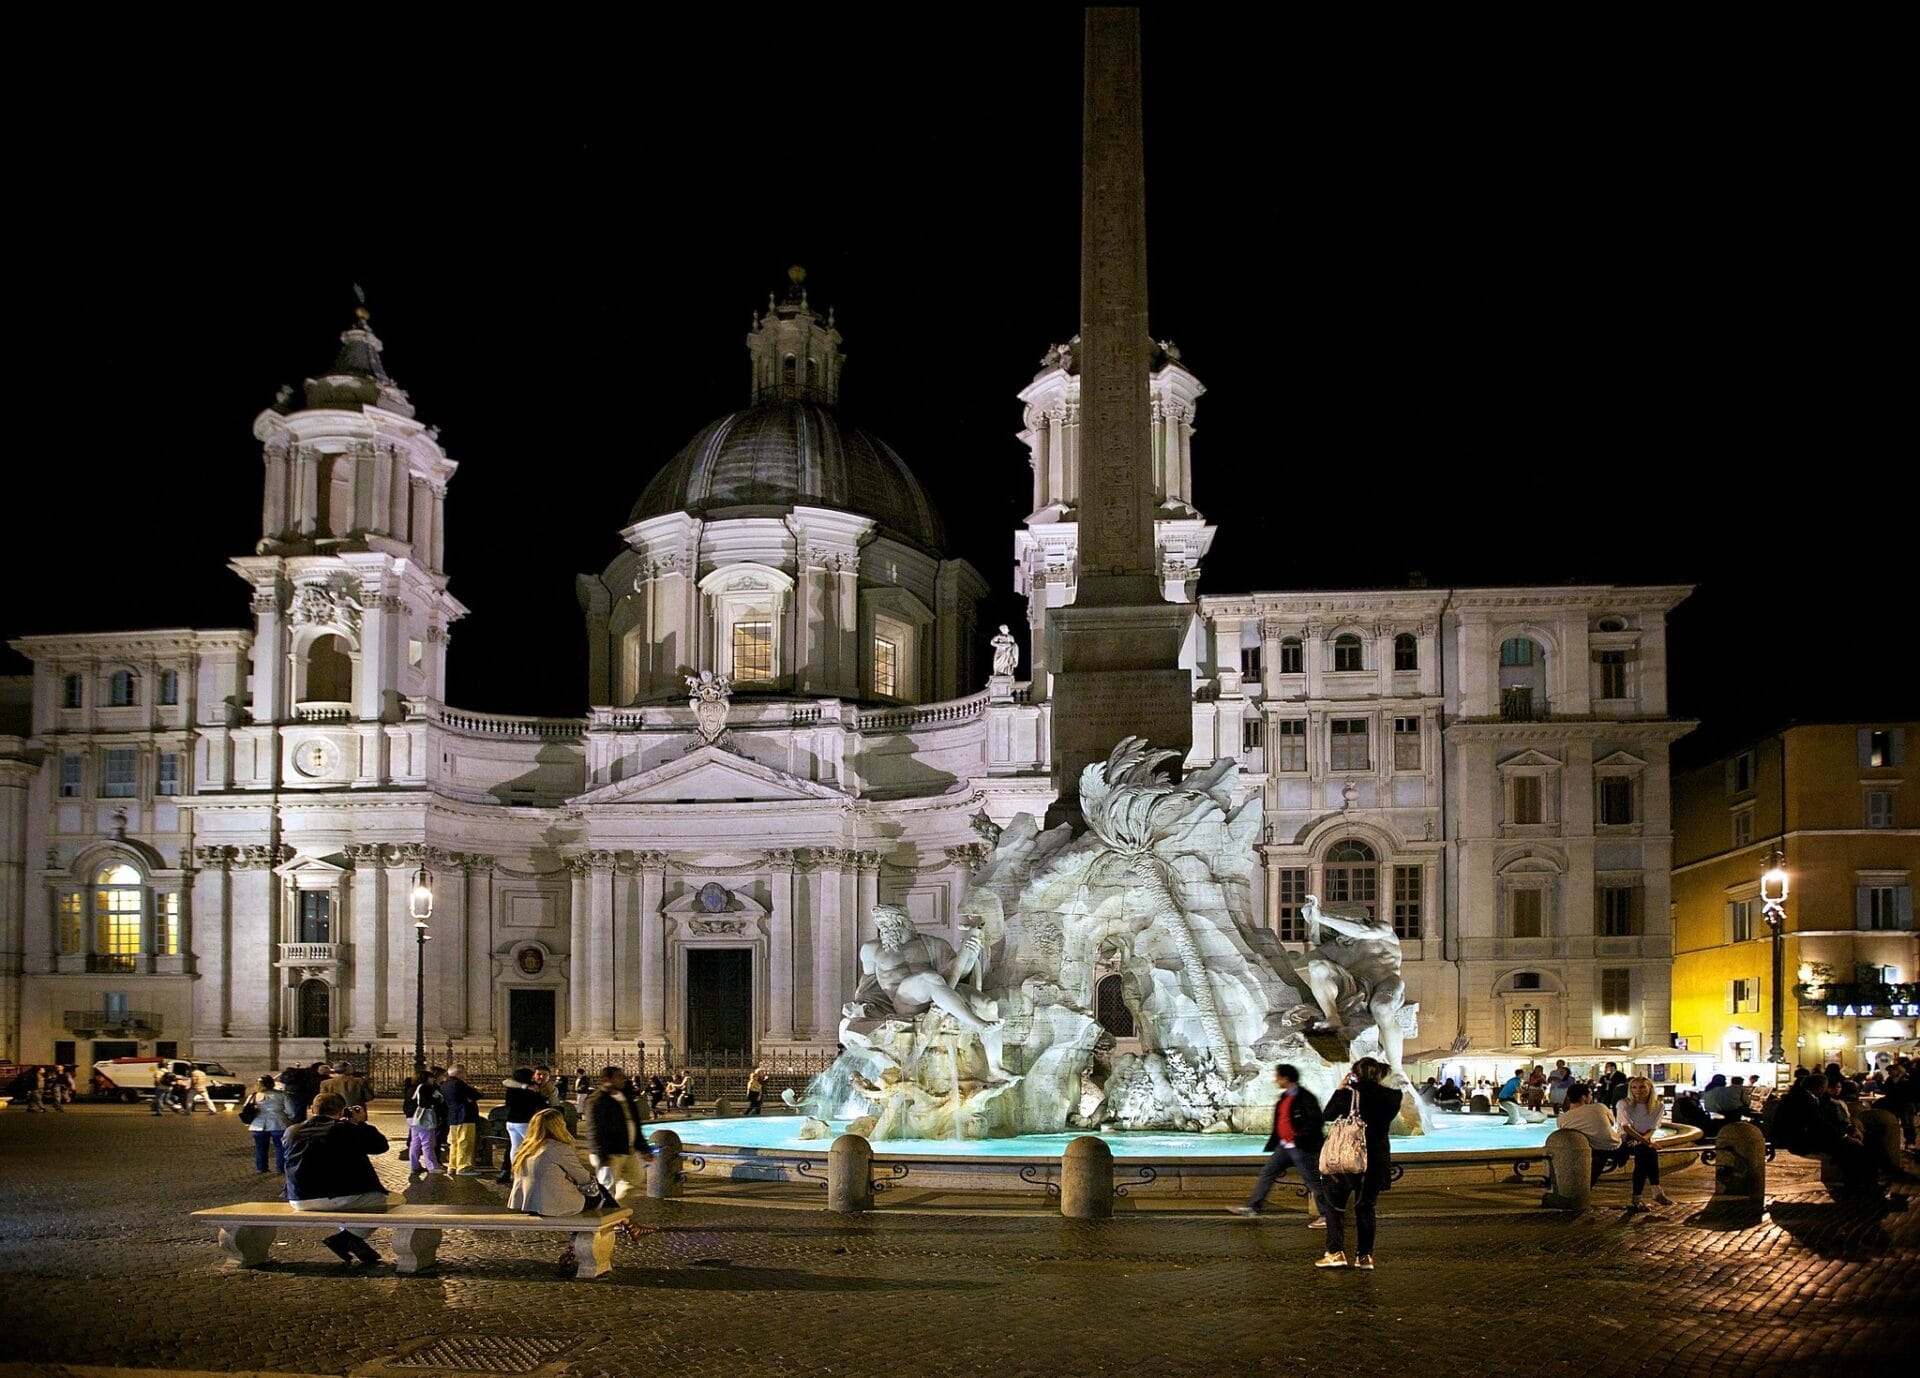 Piazza Navona, Rome at night